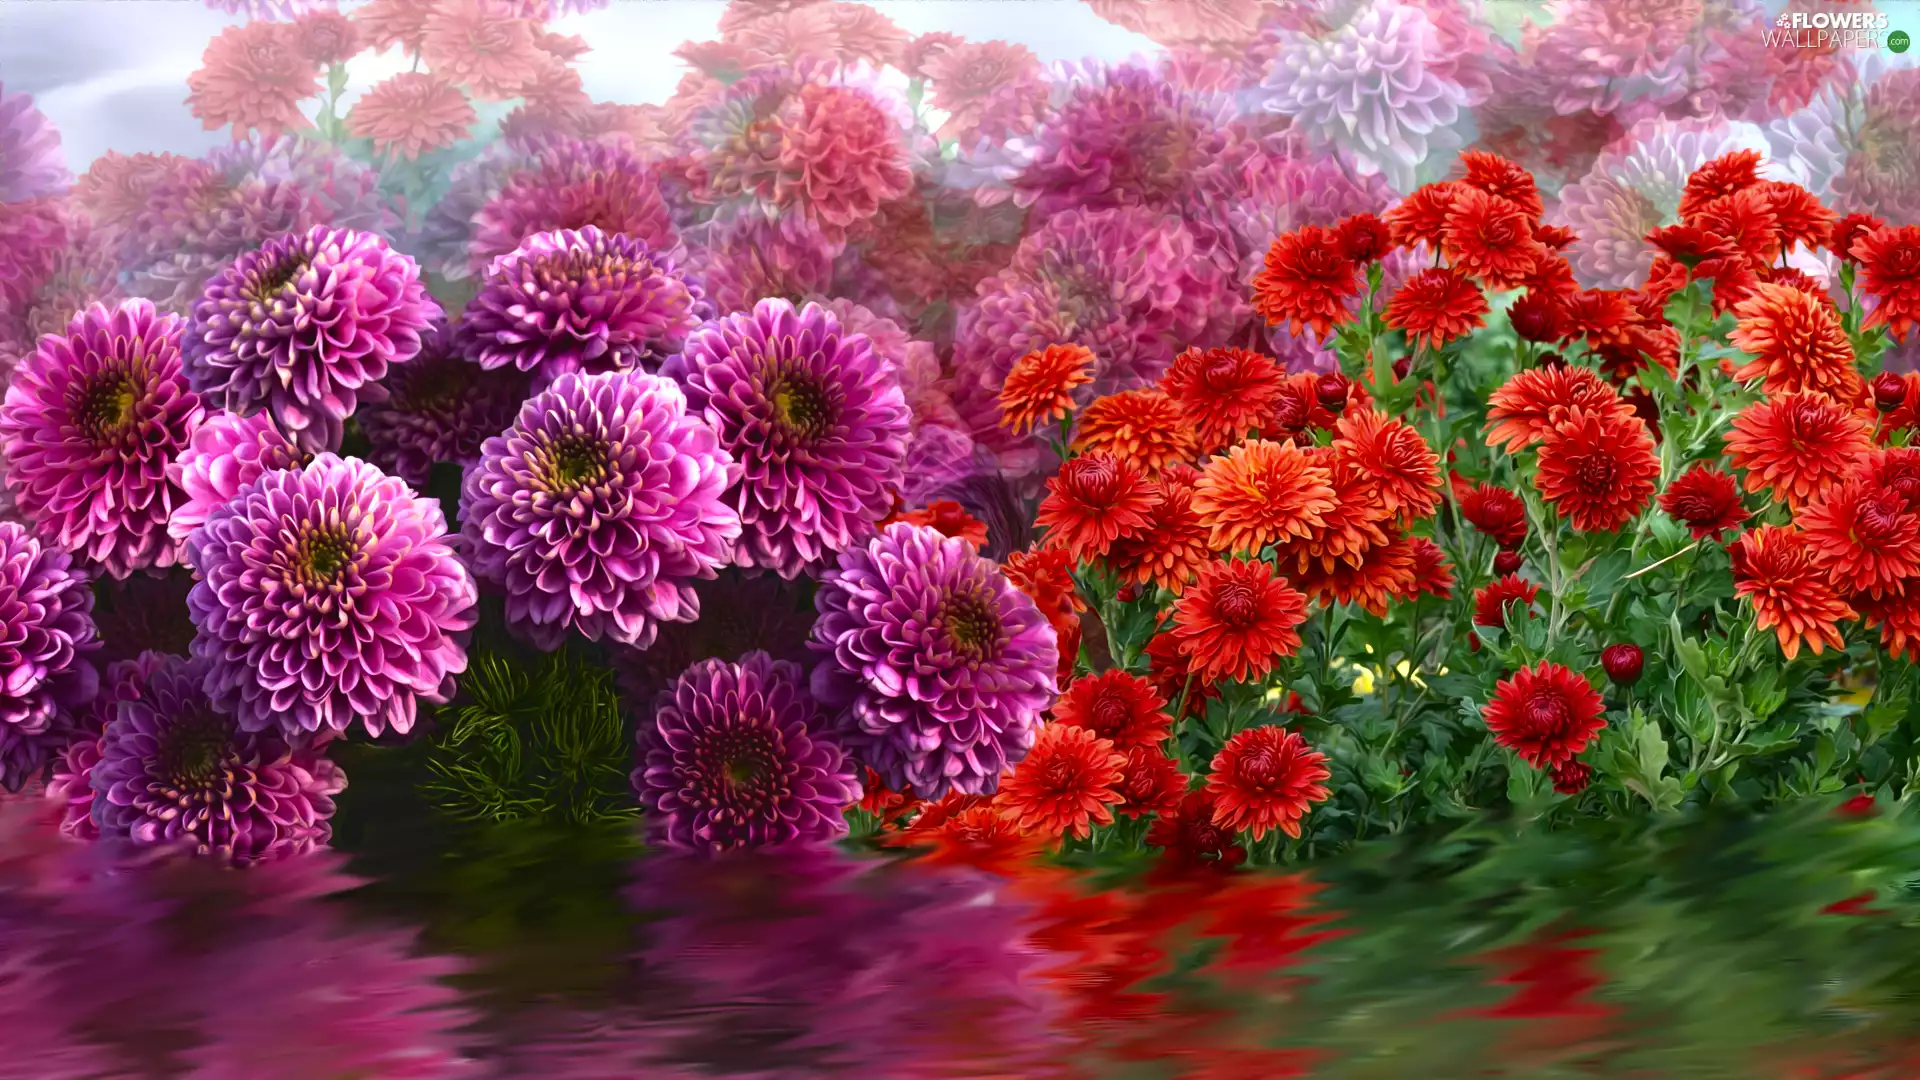 Flowers, Chrysanthemums, graphics, dahlias